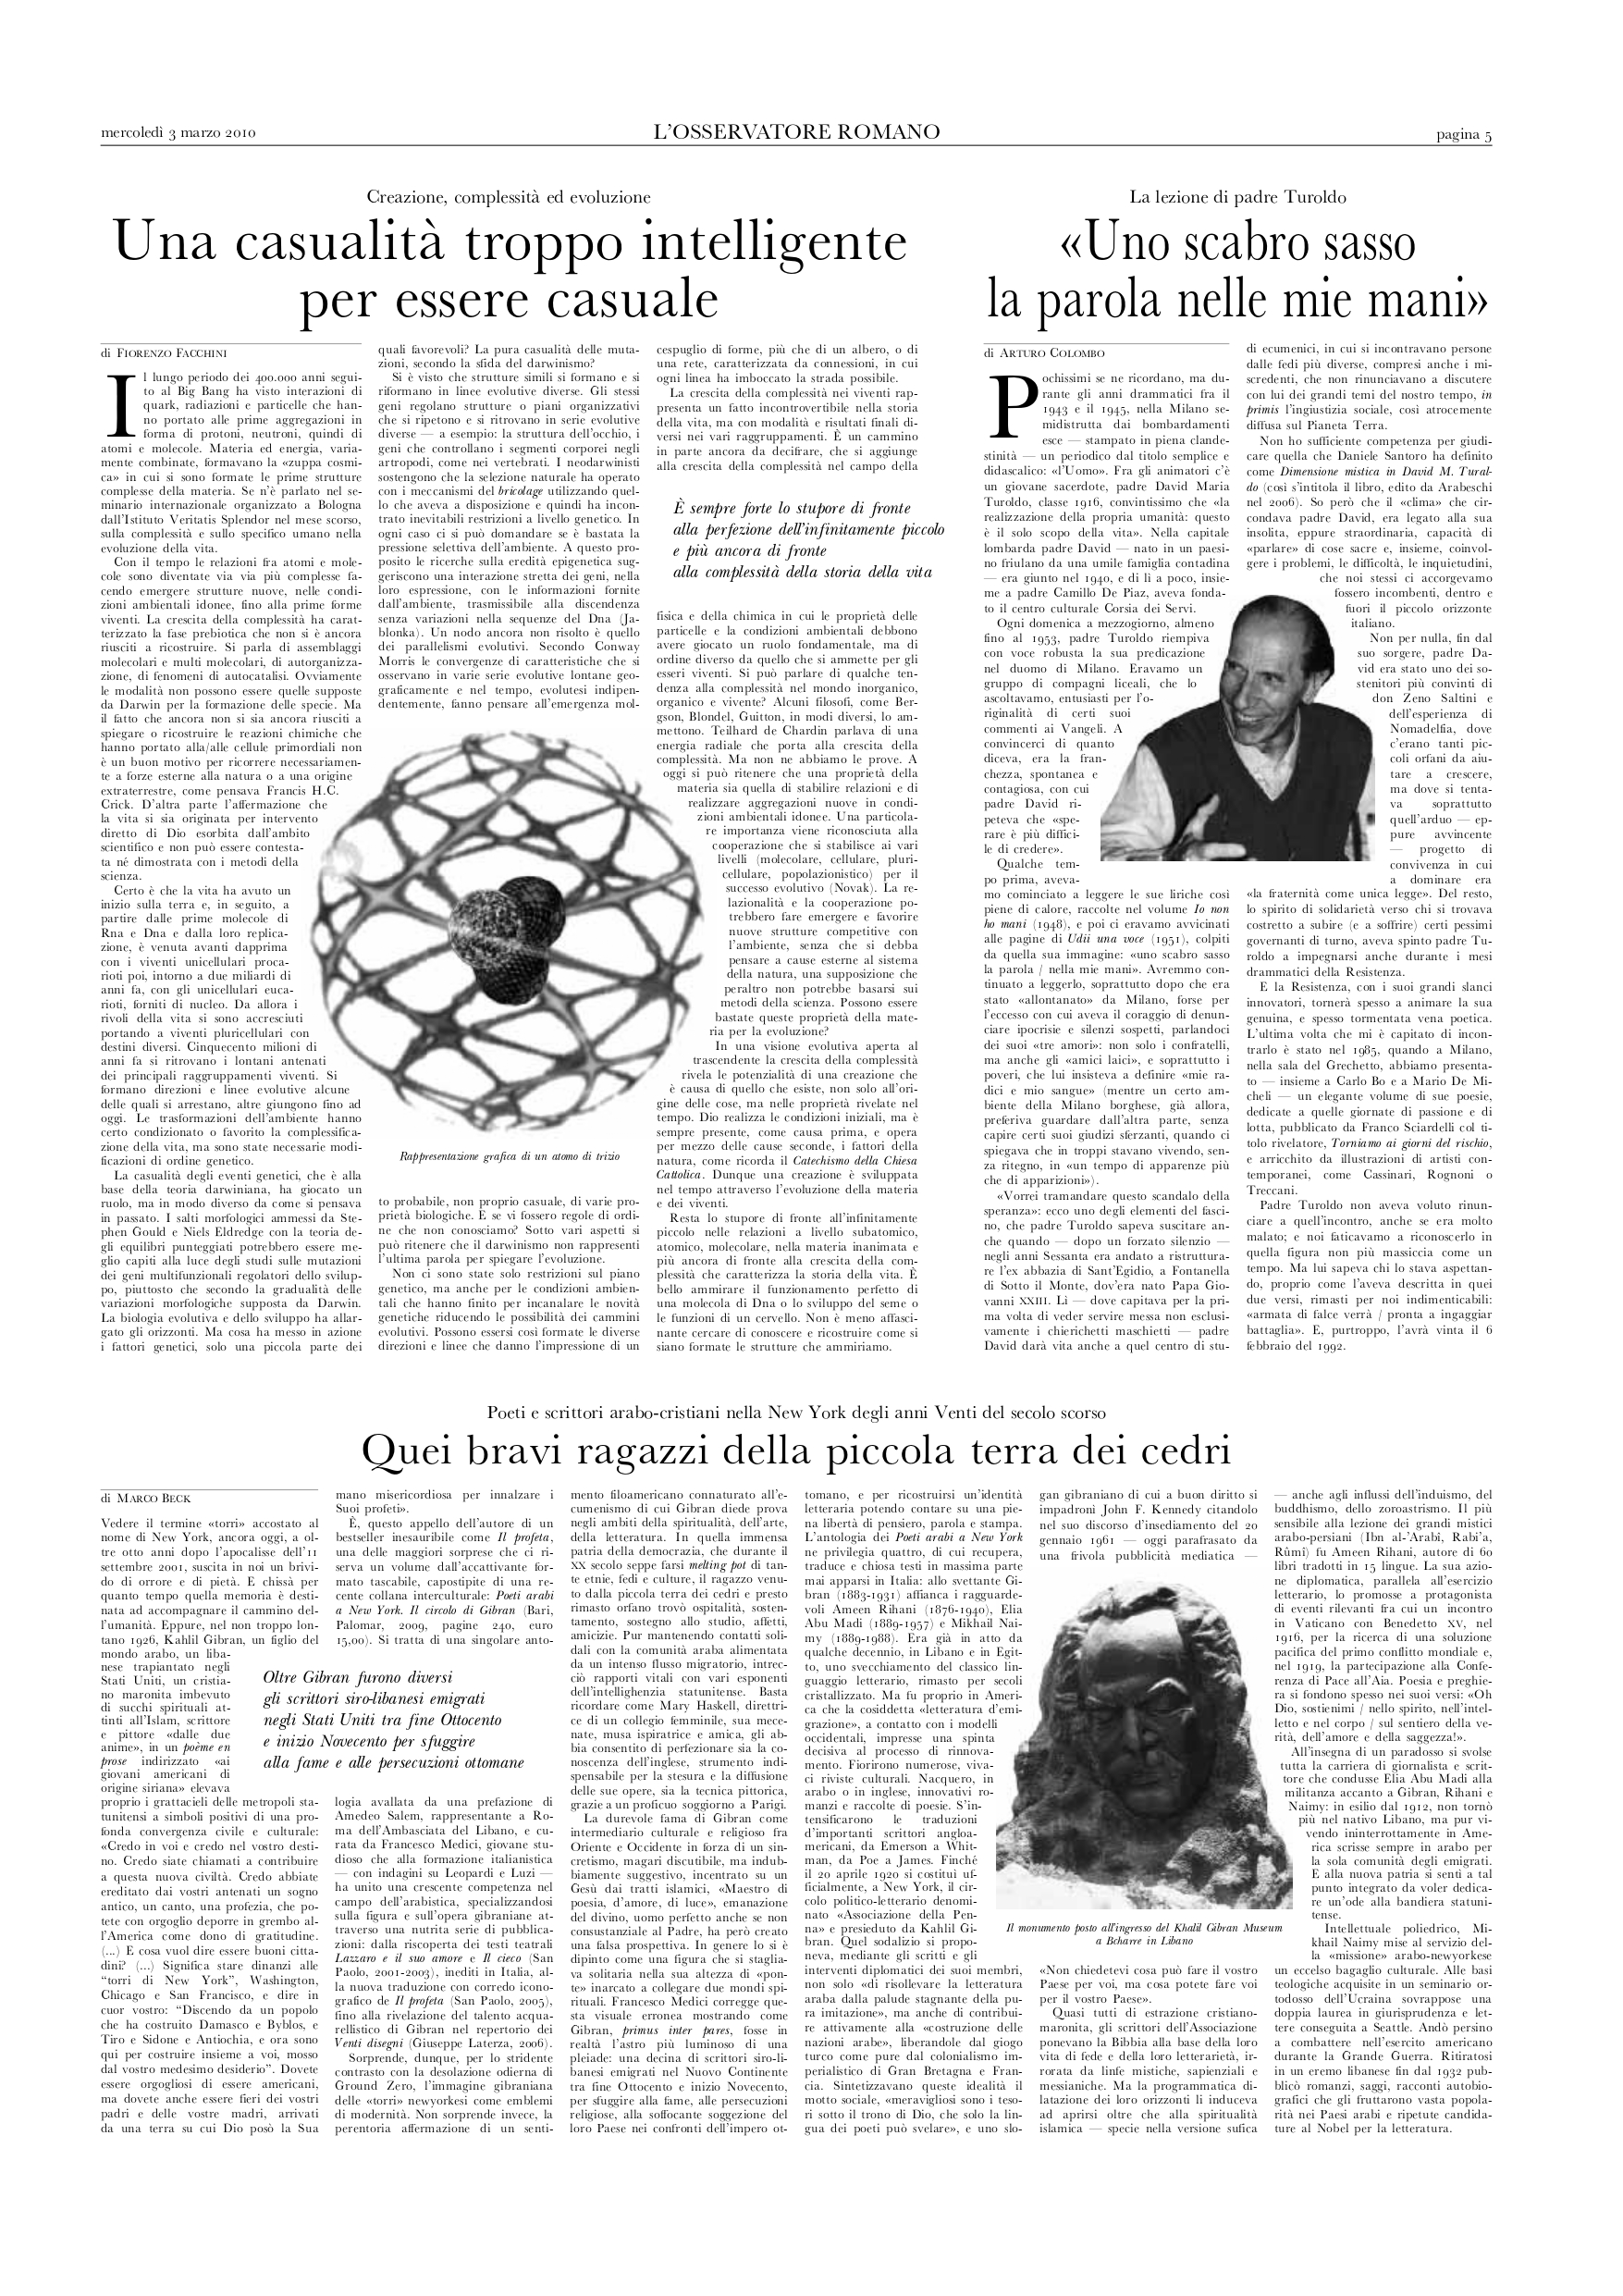 Marco Beck, Quei bravi ragazzi della piccola terra dei cedri, "L'Osservatore Romano", Mar 3, 2010, p. 5 (review)